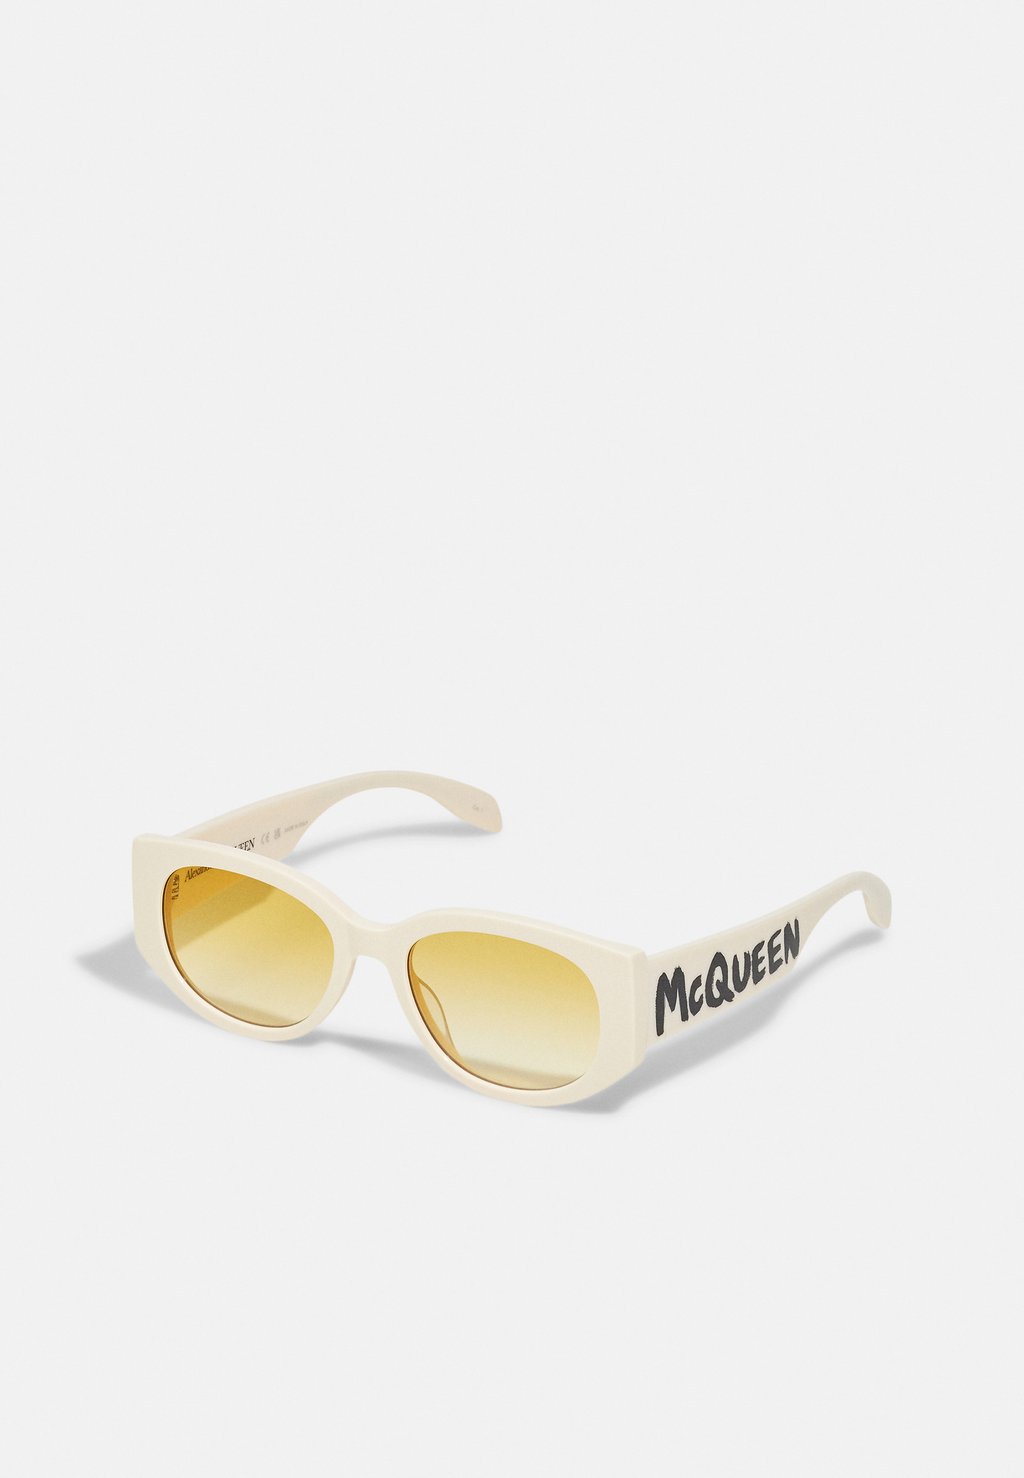 Солнцезащитные очки Alexander McQueen, белый/желтый 35179